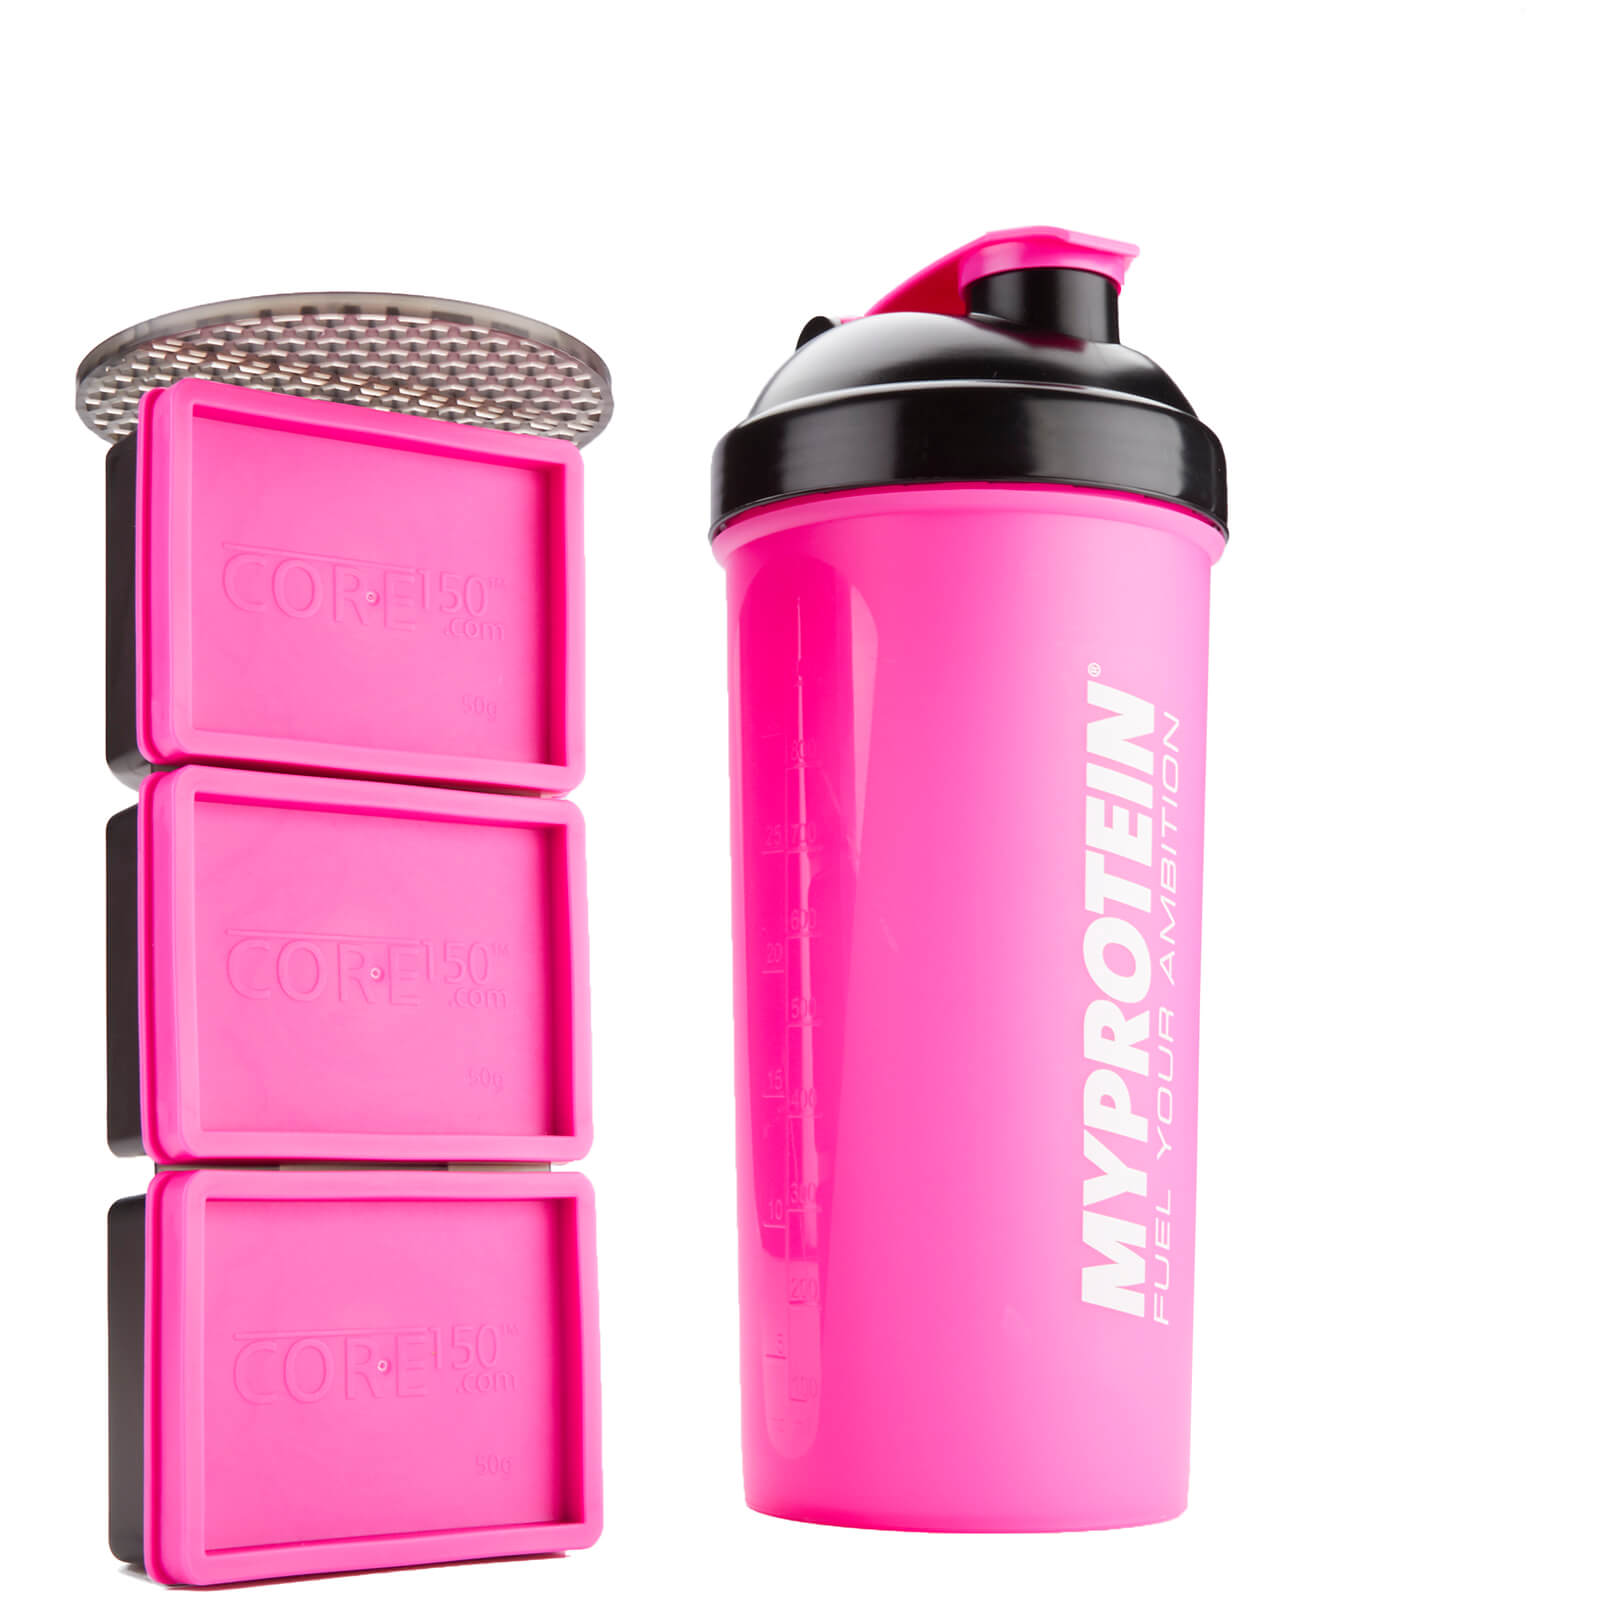 Myprotein CORE 150 Shaker – Pink